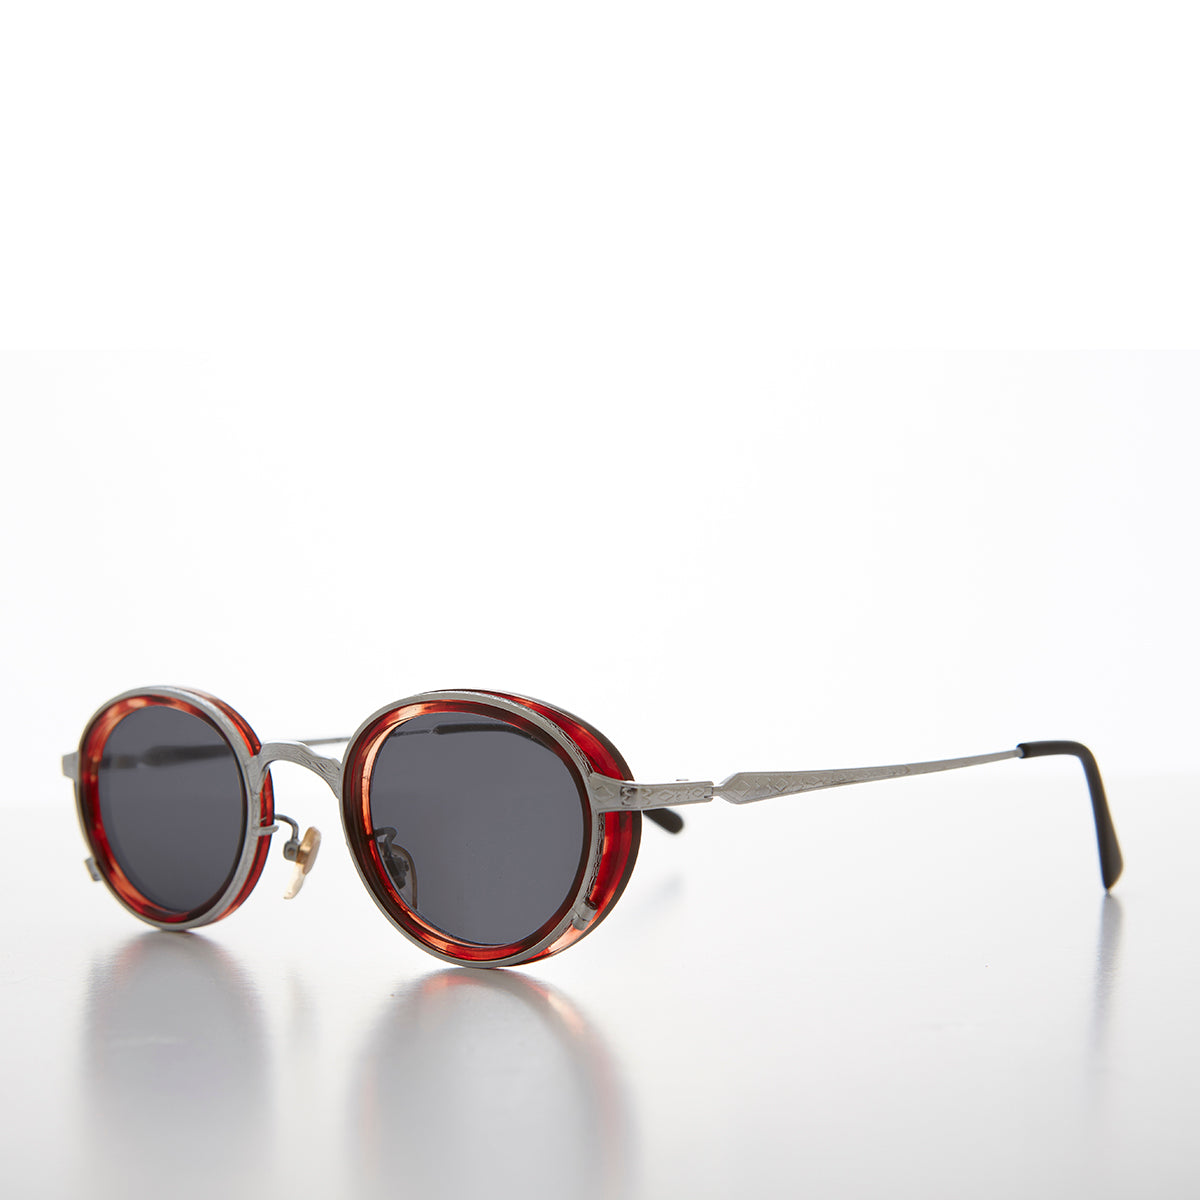 oval silver sunglasses